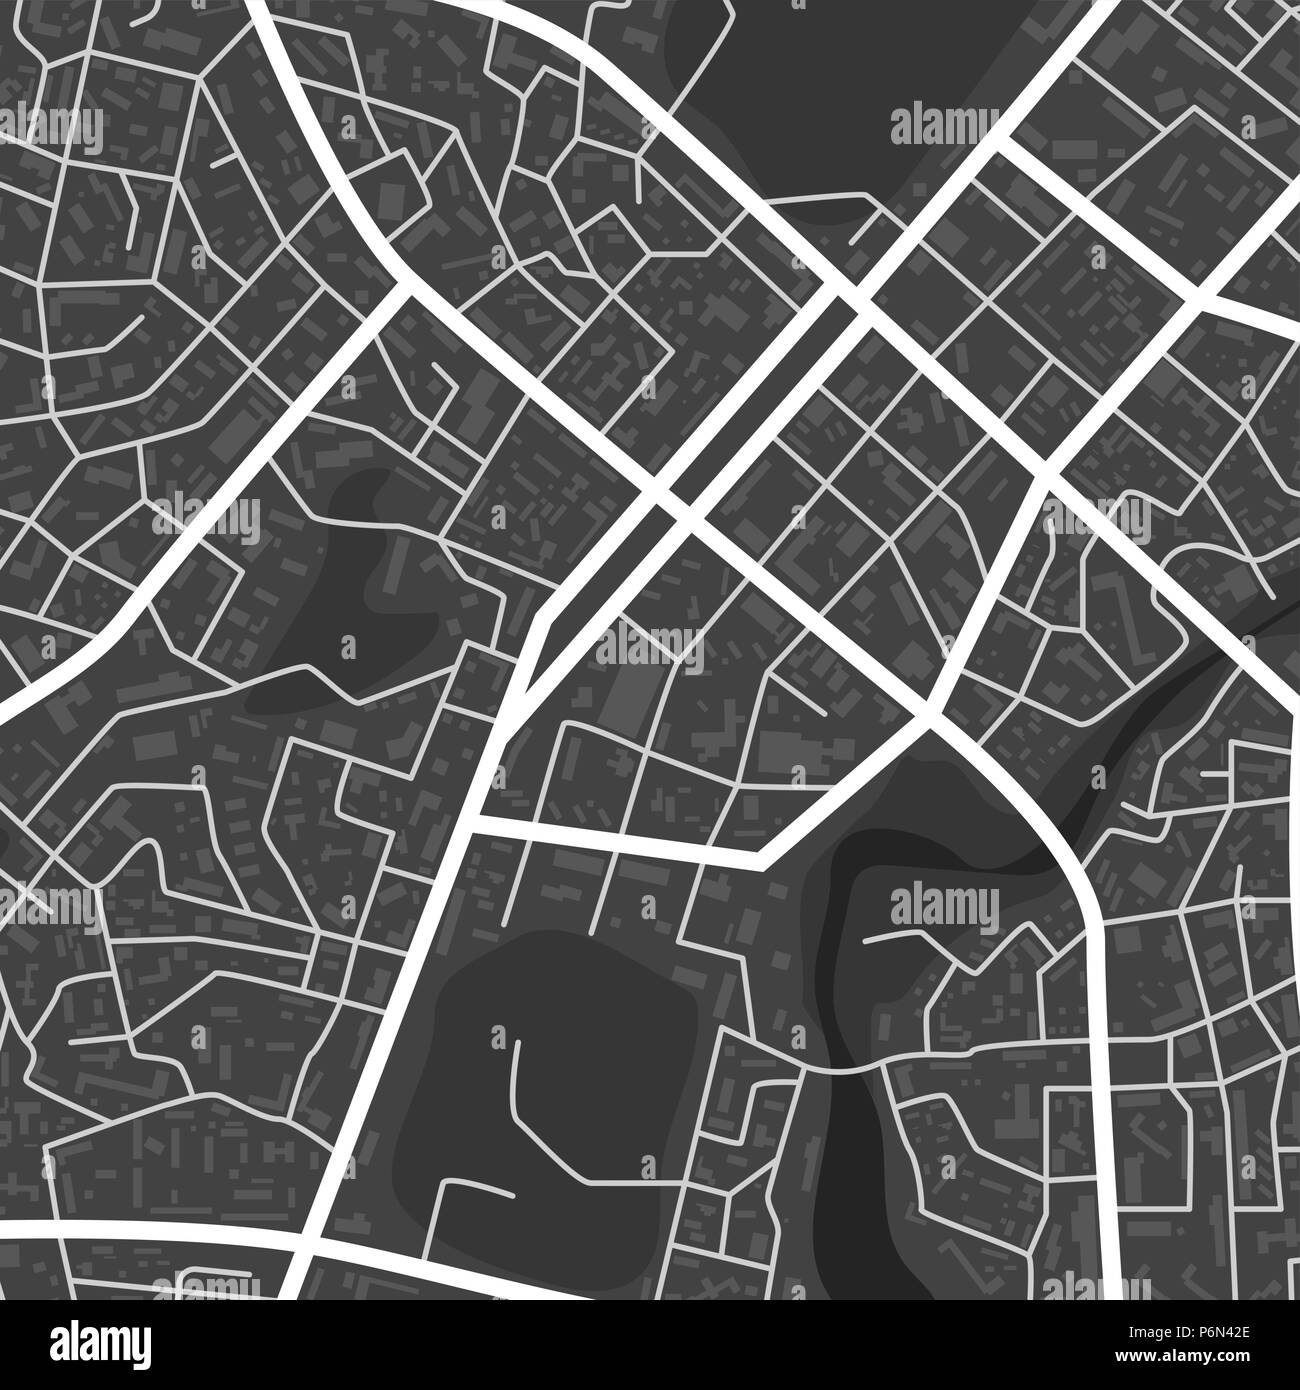 Abstrakte schwarz-weißen Stadtkarte. Stadt Wohnviertel. Stadtteil Plan. Vector Illustration Stock Vektor